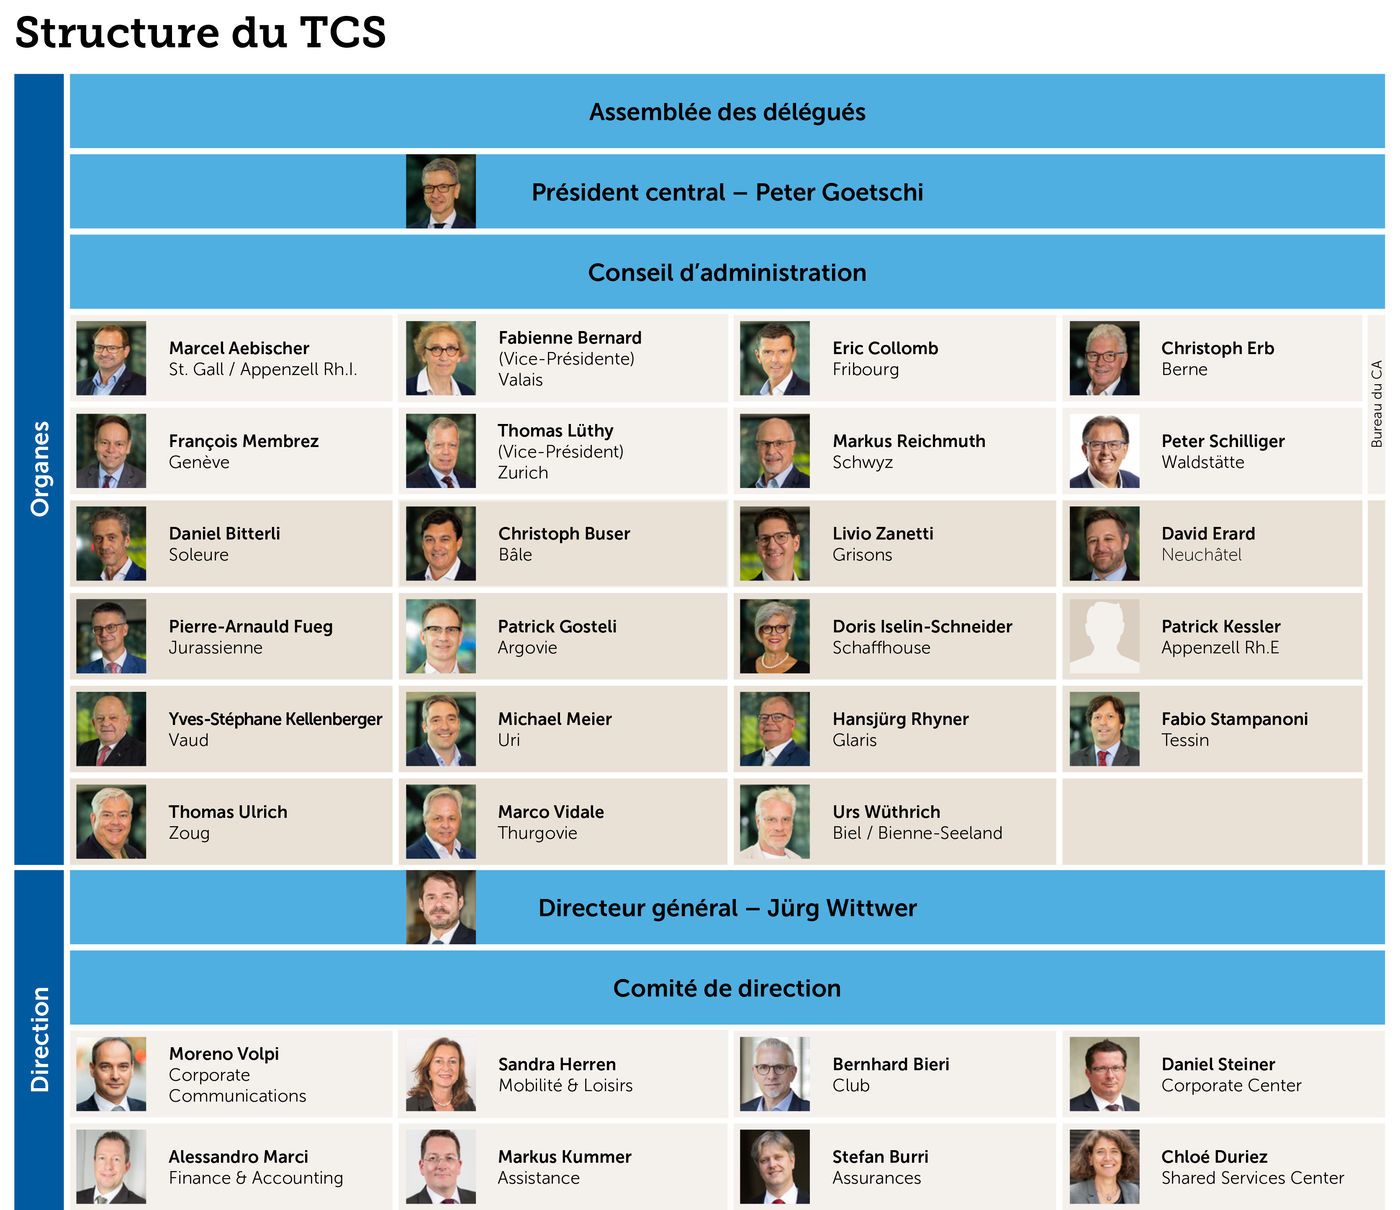 Structure du TCS